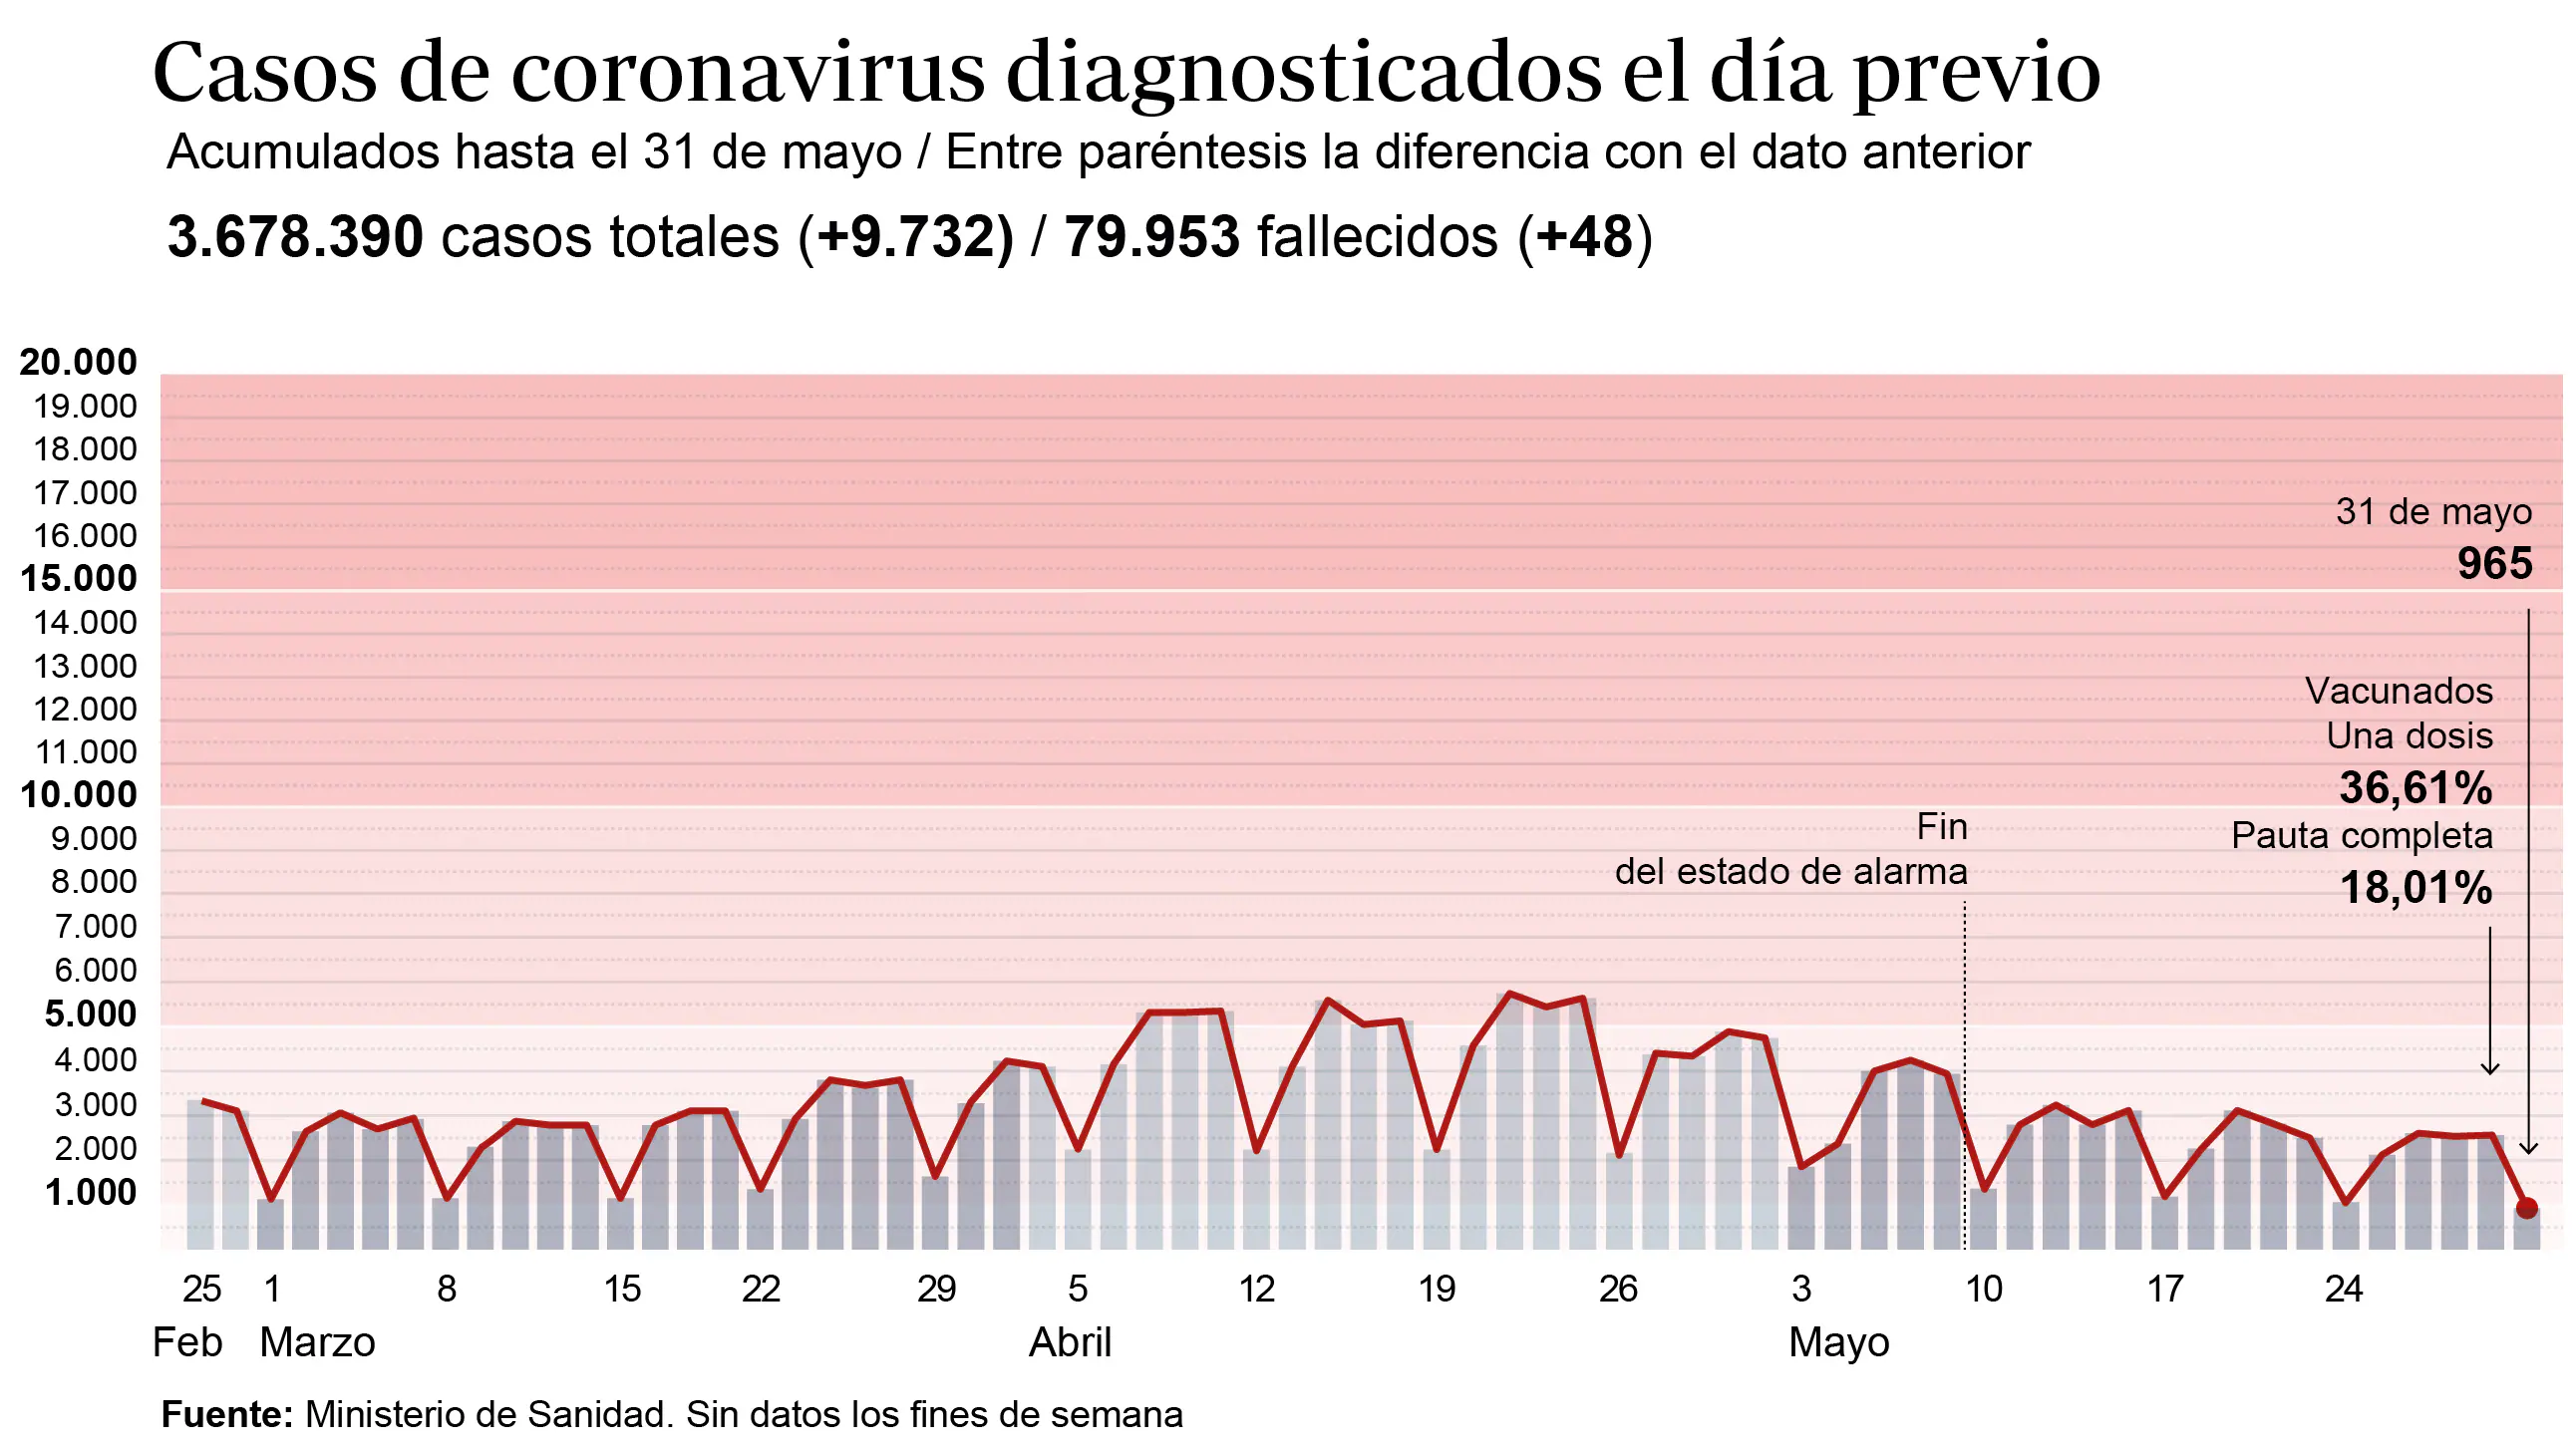 Datos sobre la evolución de los casos de coronavirus en España